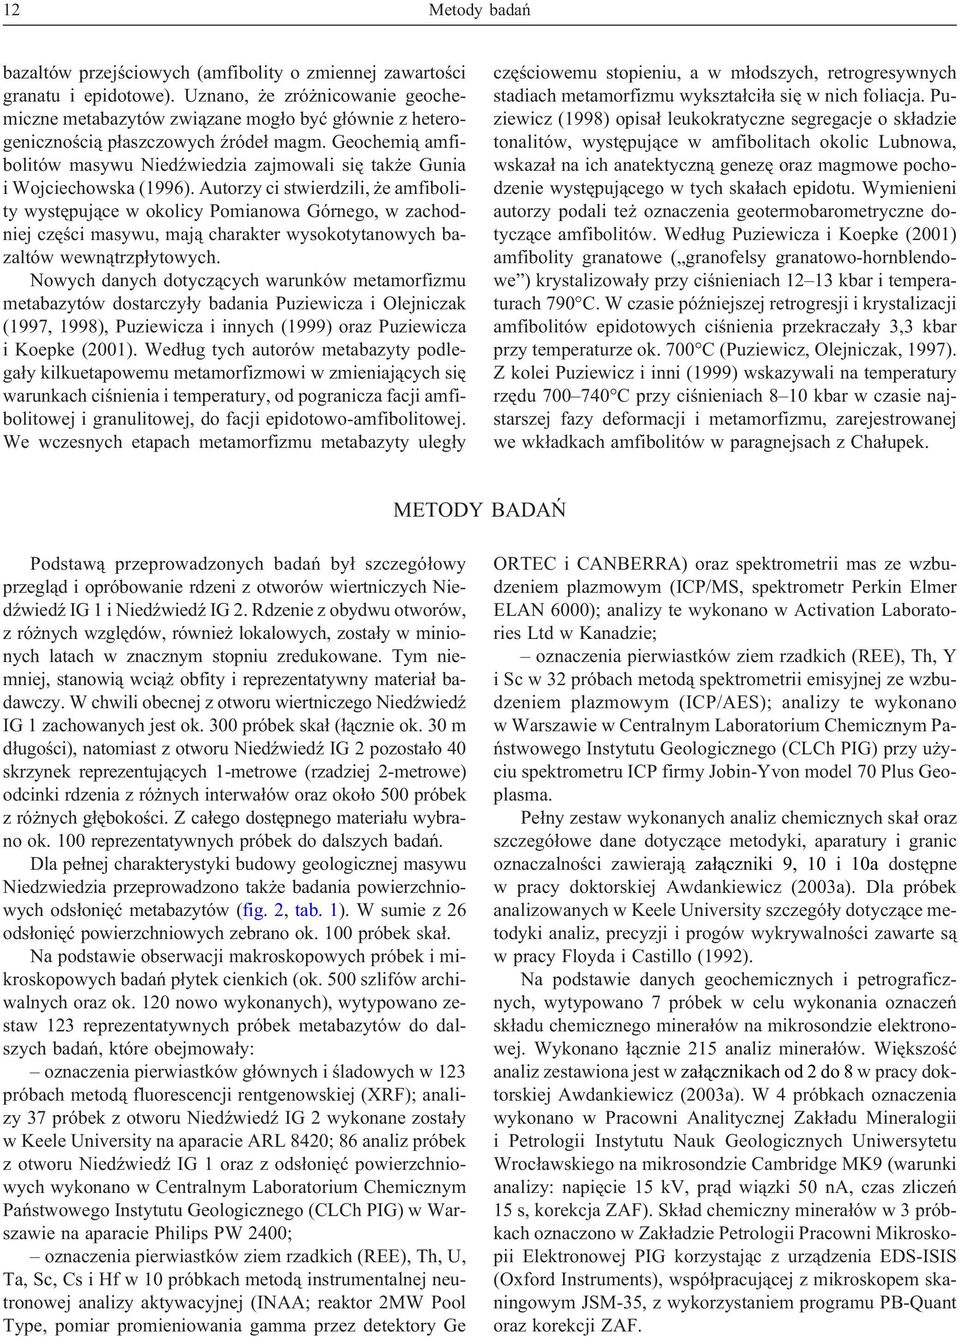 Geochemi¹ amfibolitów masywu NiedŸwiedzia zajmowali siê tak e Gunia i Wojciechowska (1996).